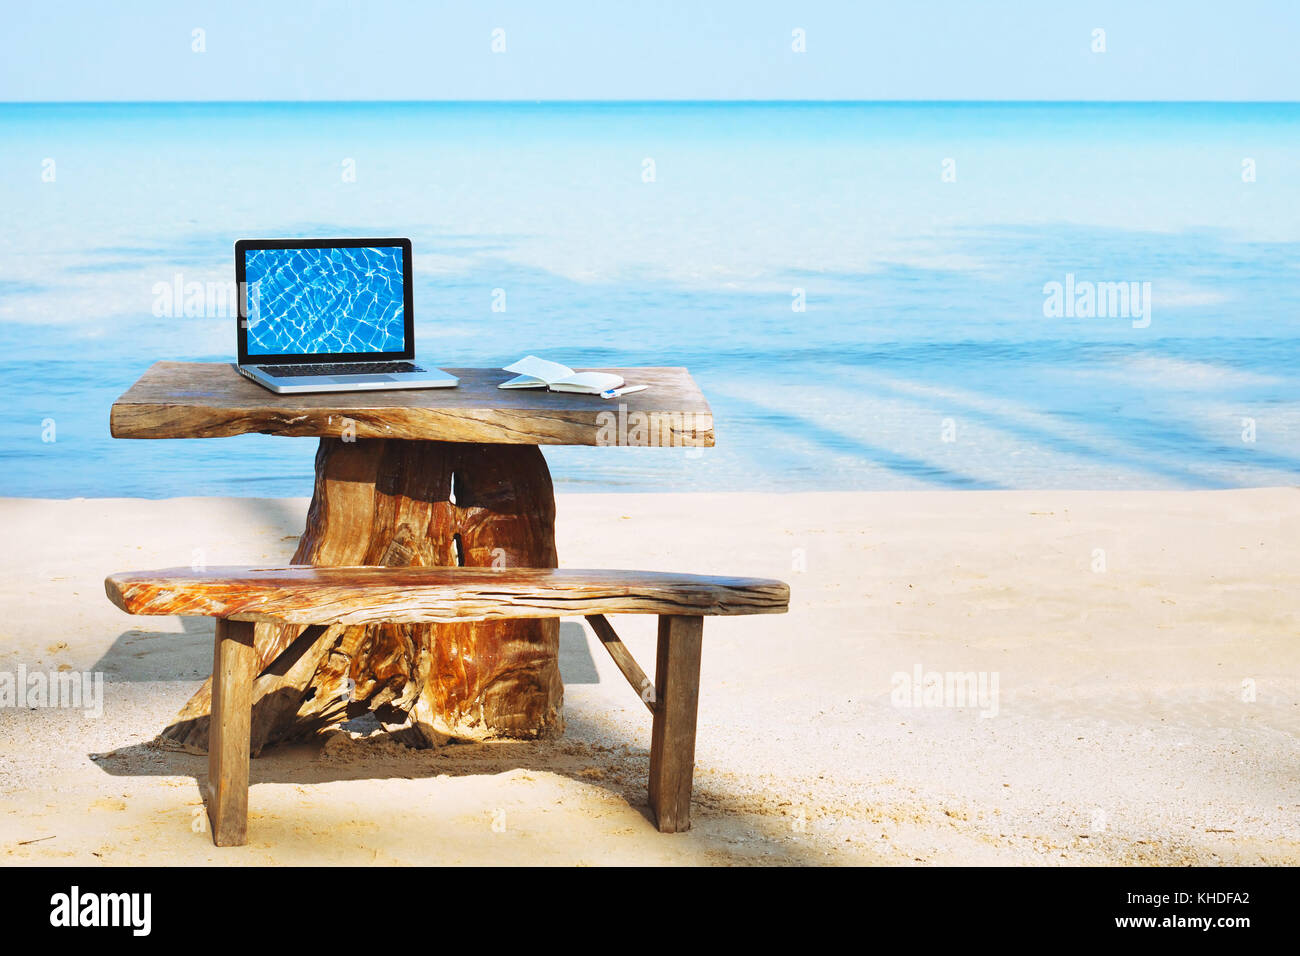 Oficina de freelancer en la playa, ordenador portátil con pantalla vacía y nadie, concepto freelance Foto de stock